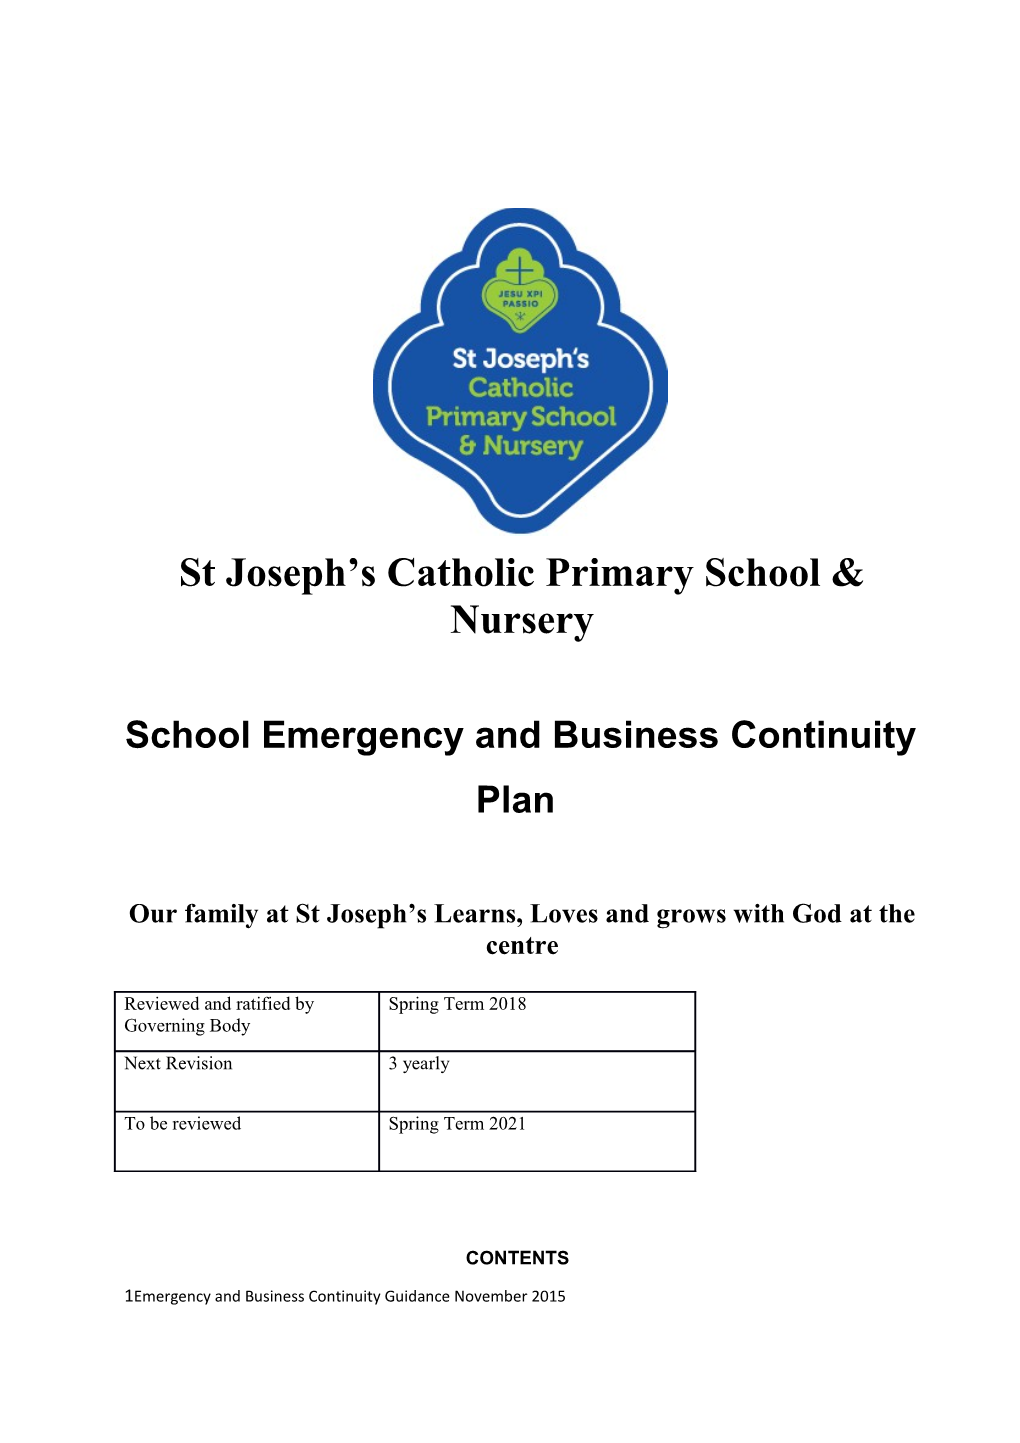 Updated School Emergency Management Plan